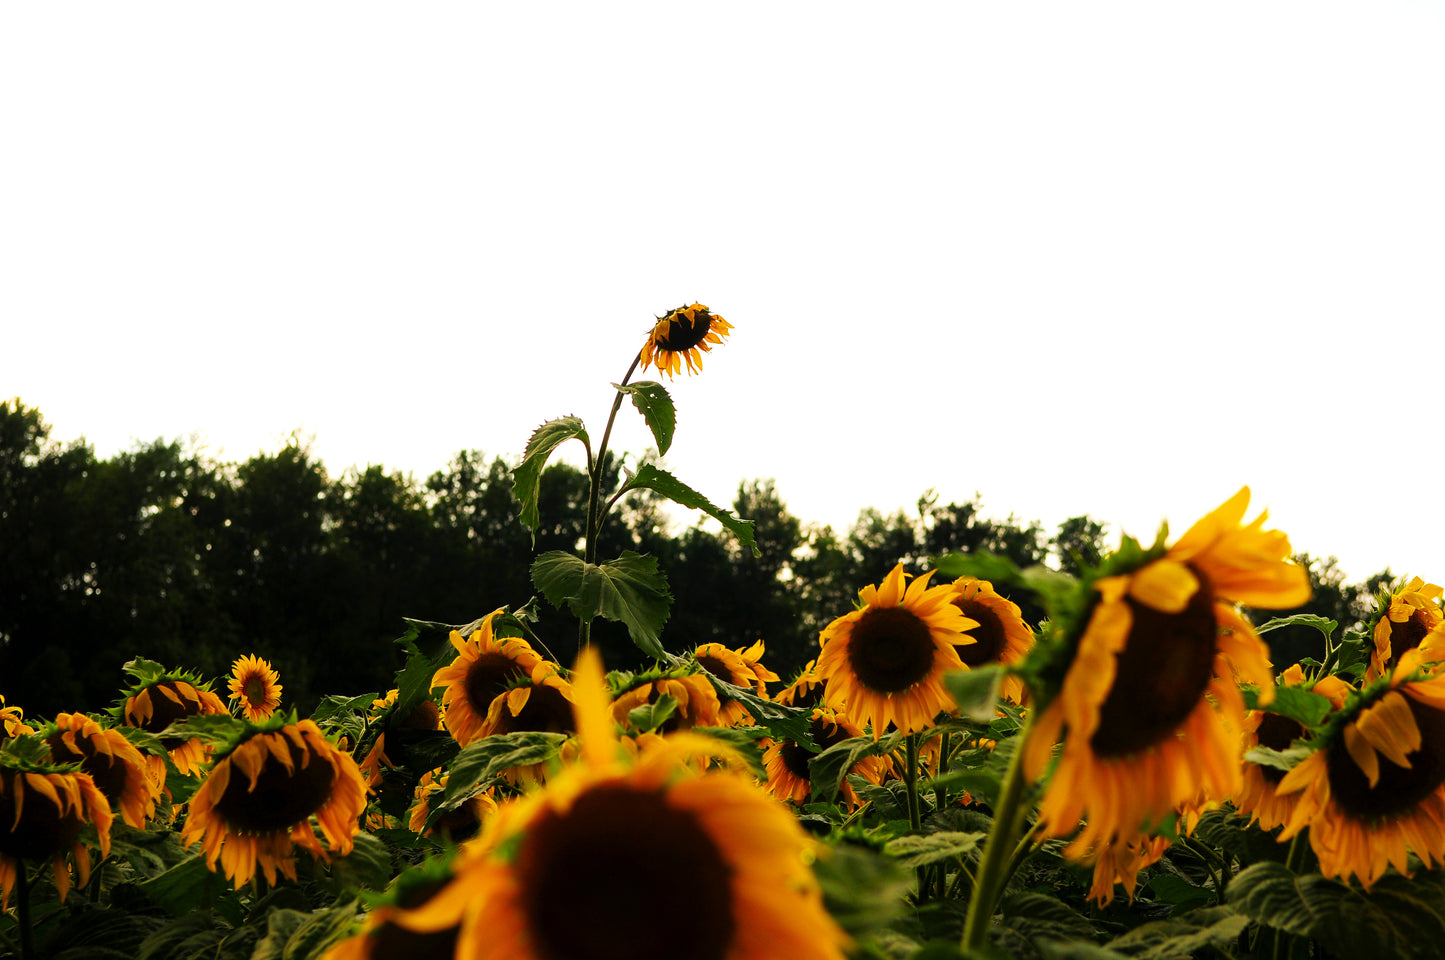 Stand Tall Sunflower (Framed Photograph 16x20)